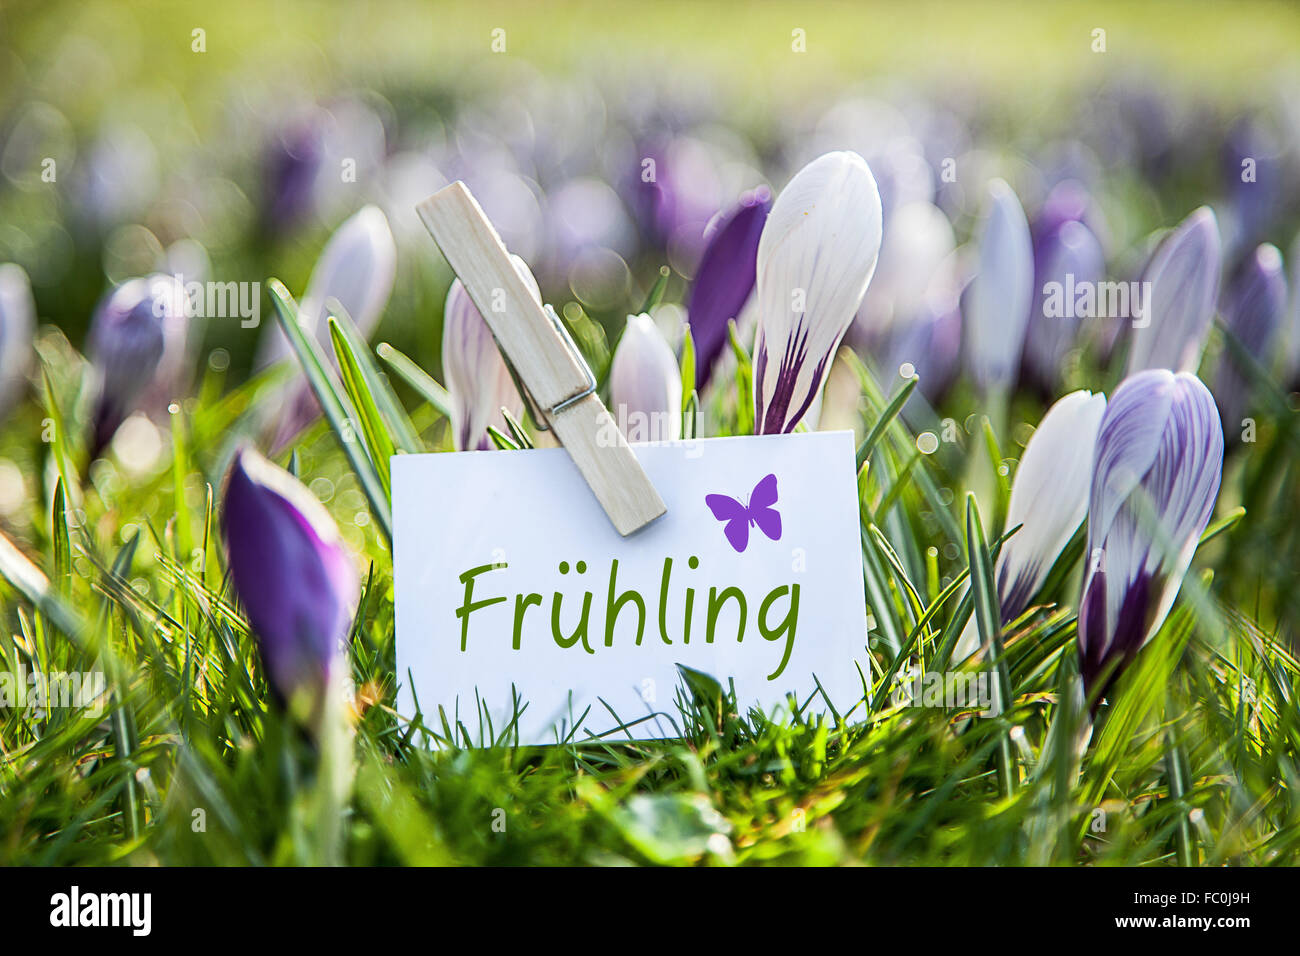 La palabra "Frühling" con azafrán Foto de stock